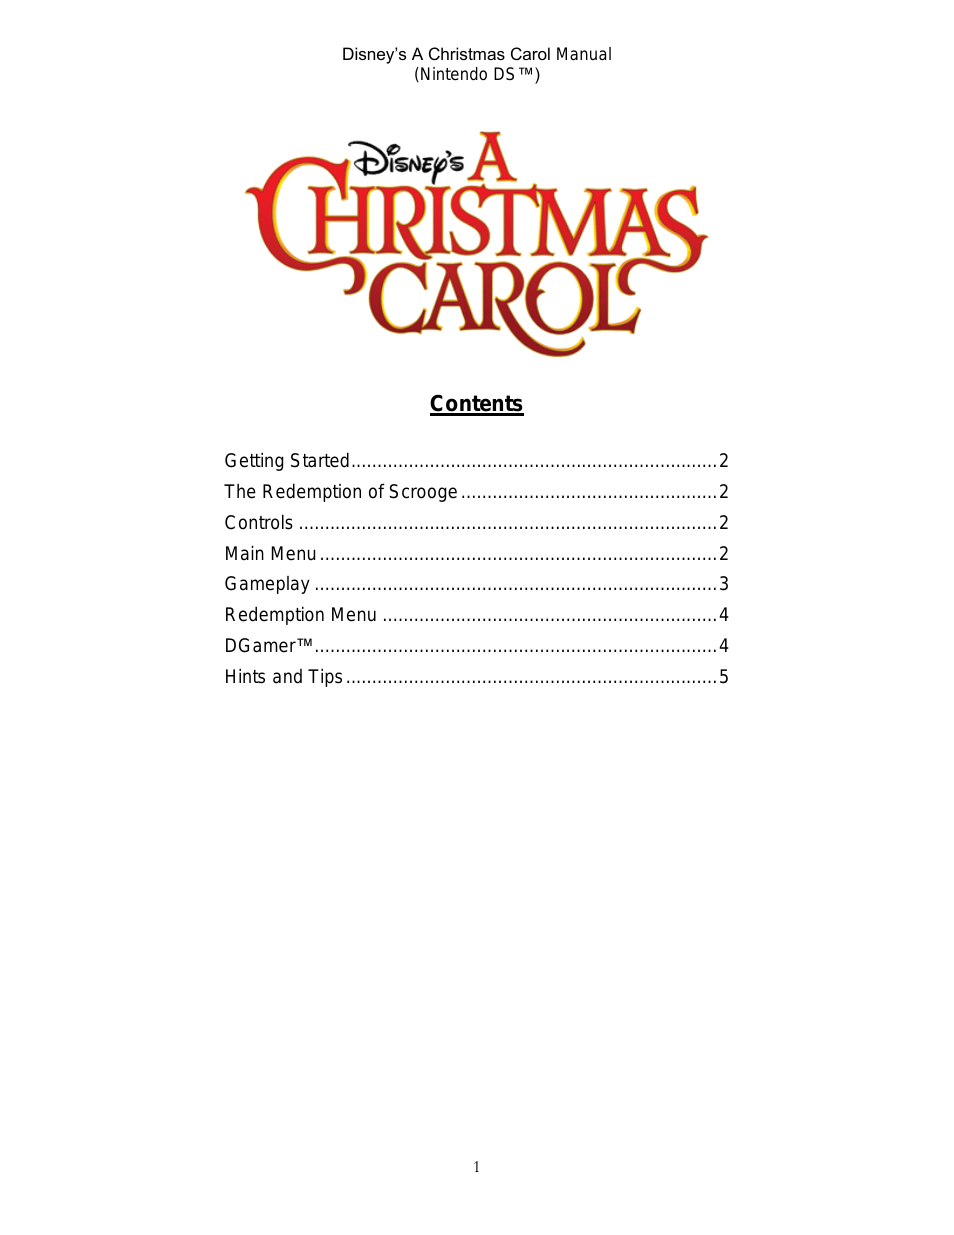 A Christmas Carol for Nintendo DS